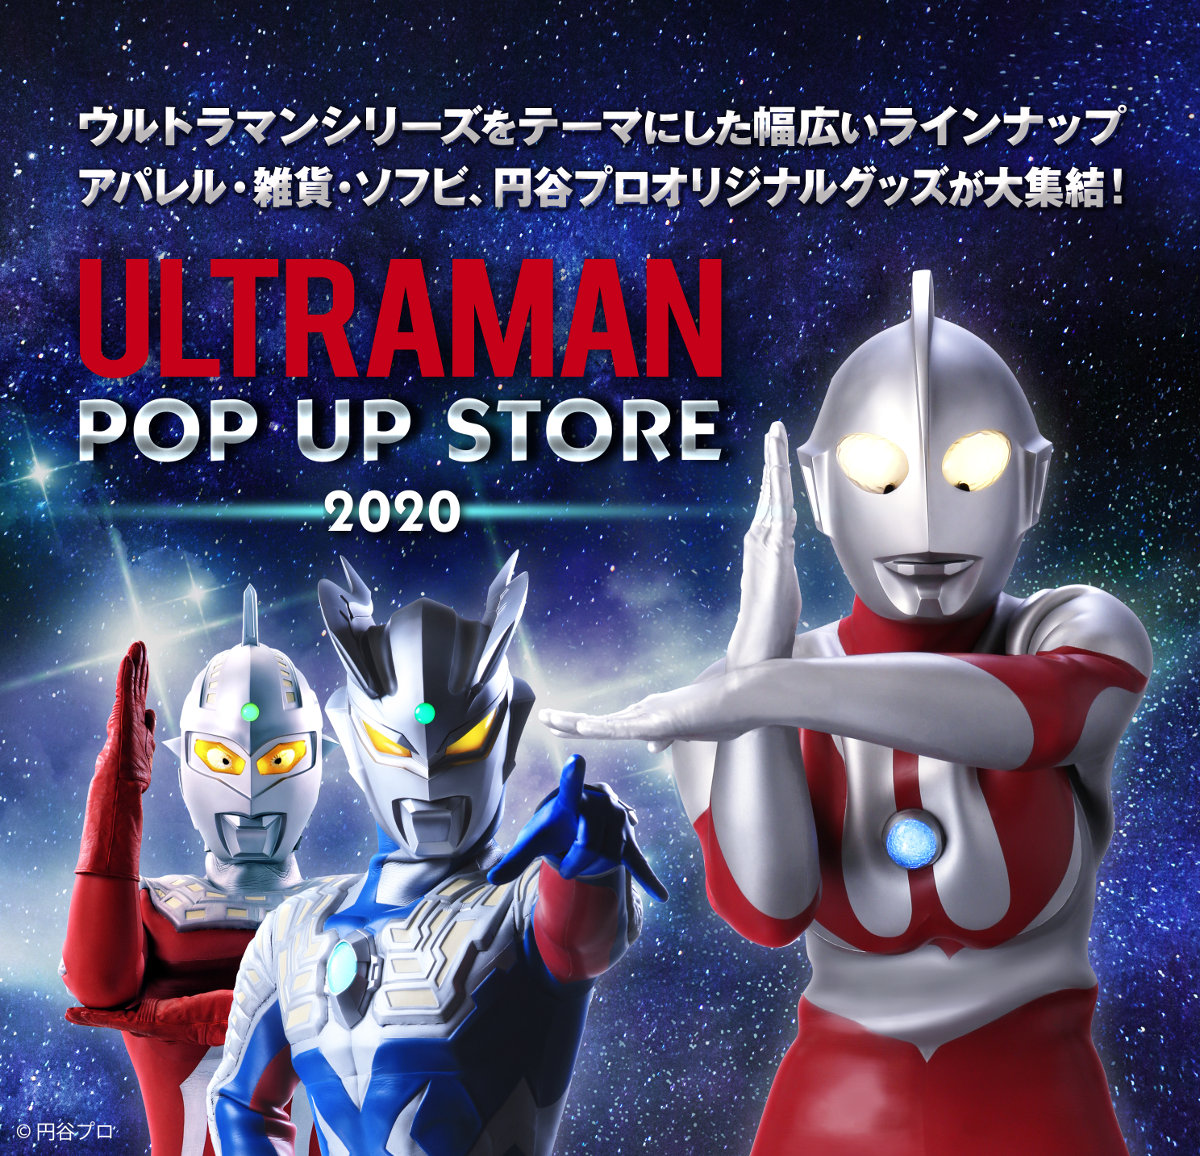 ULTRAMAN POP-UP STORE 2020